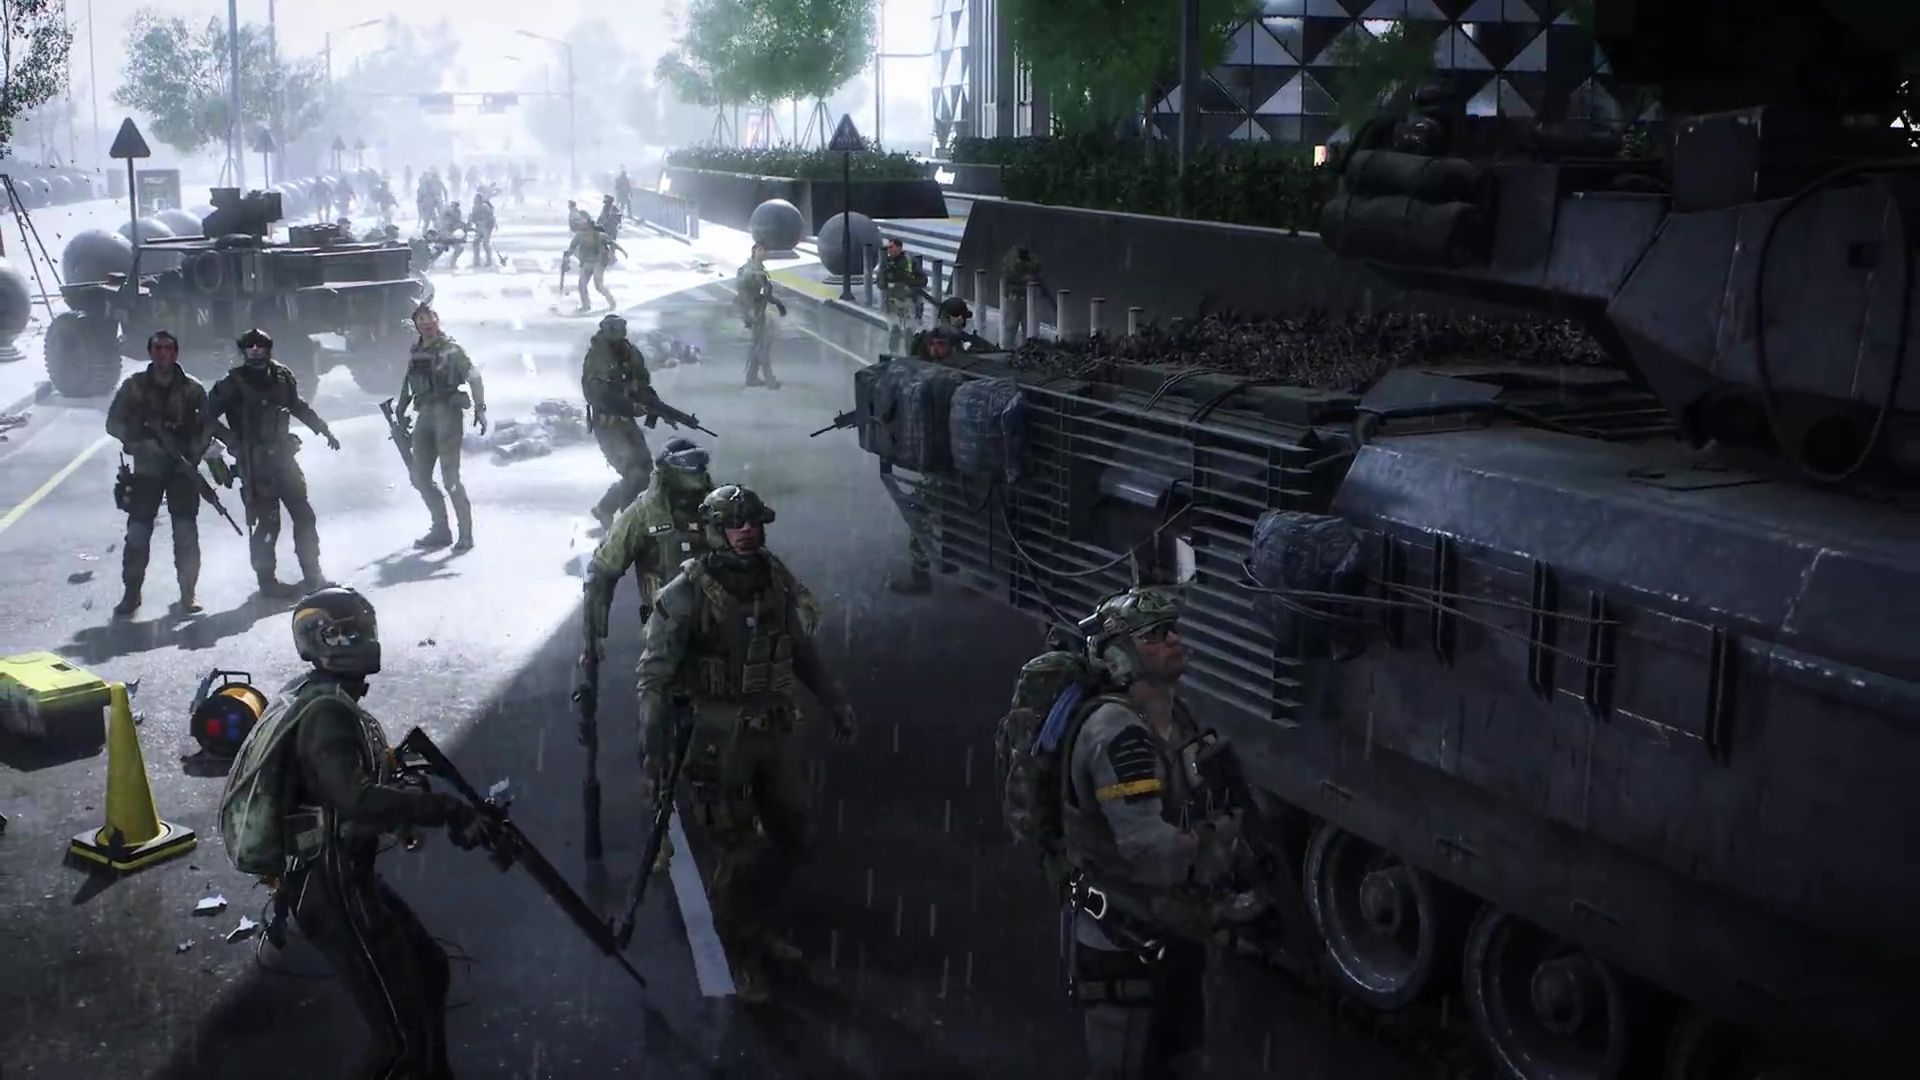 Battlefield 2042 Screenshots Image -HQ.COM